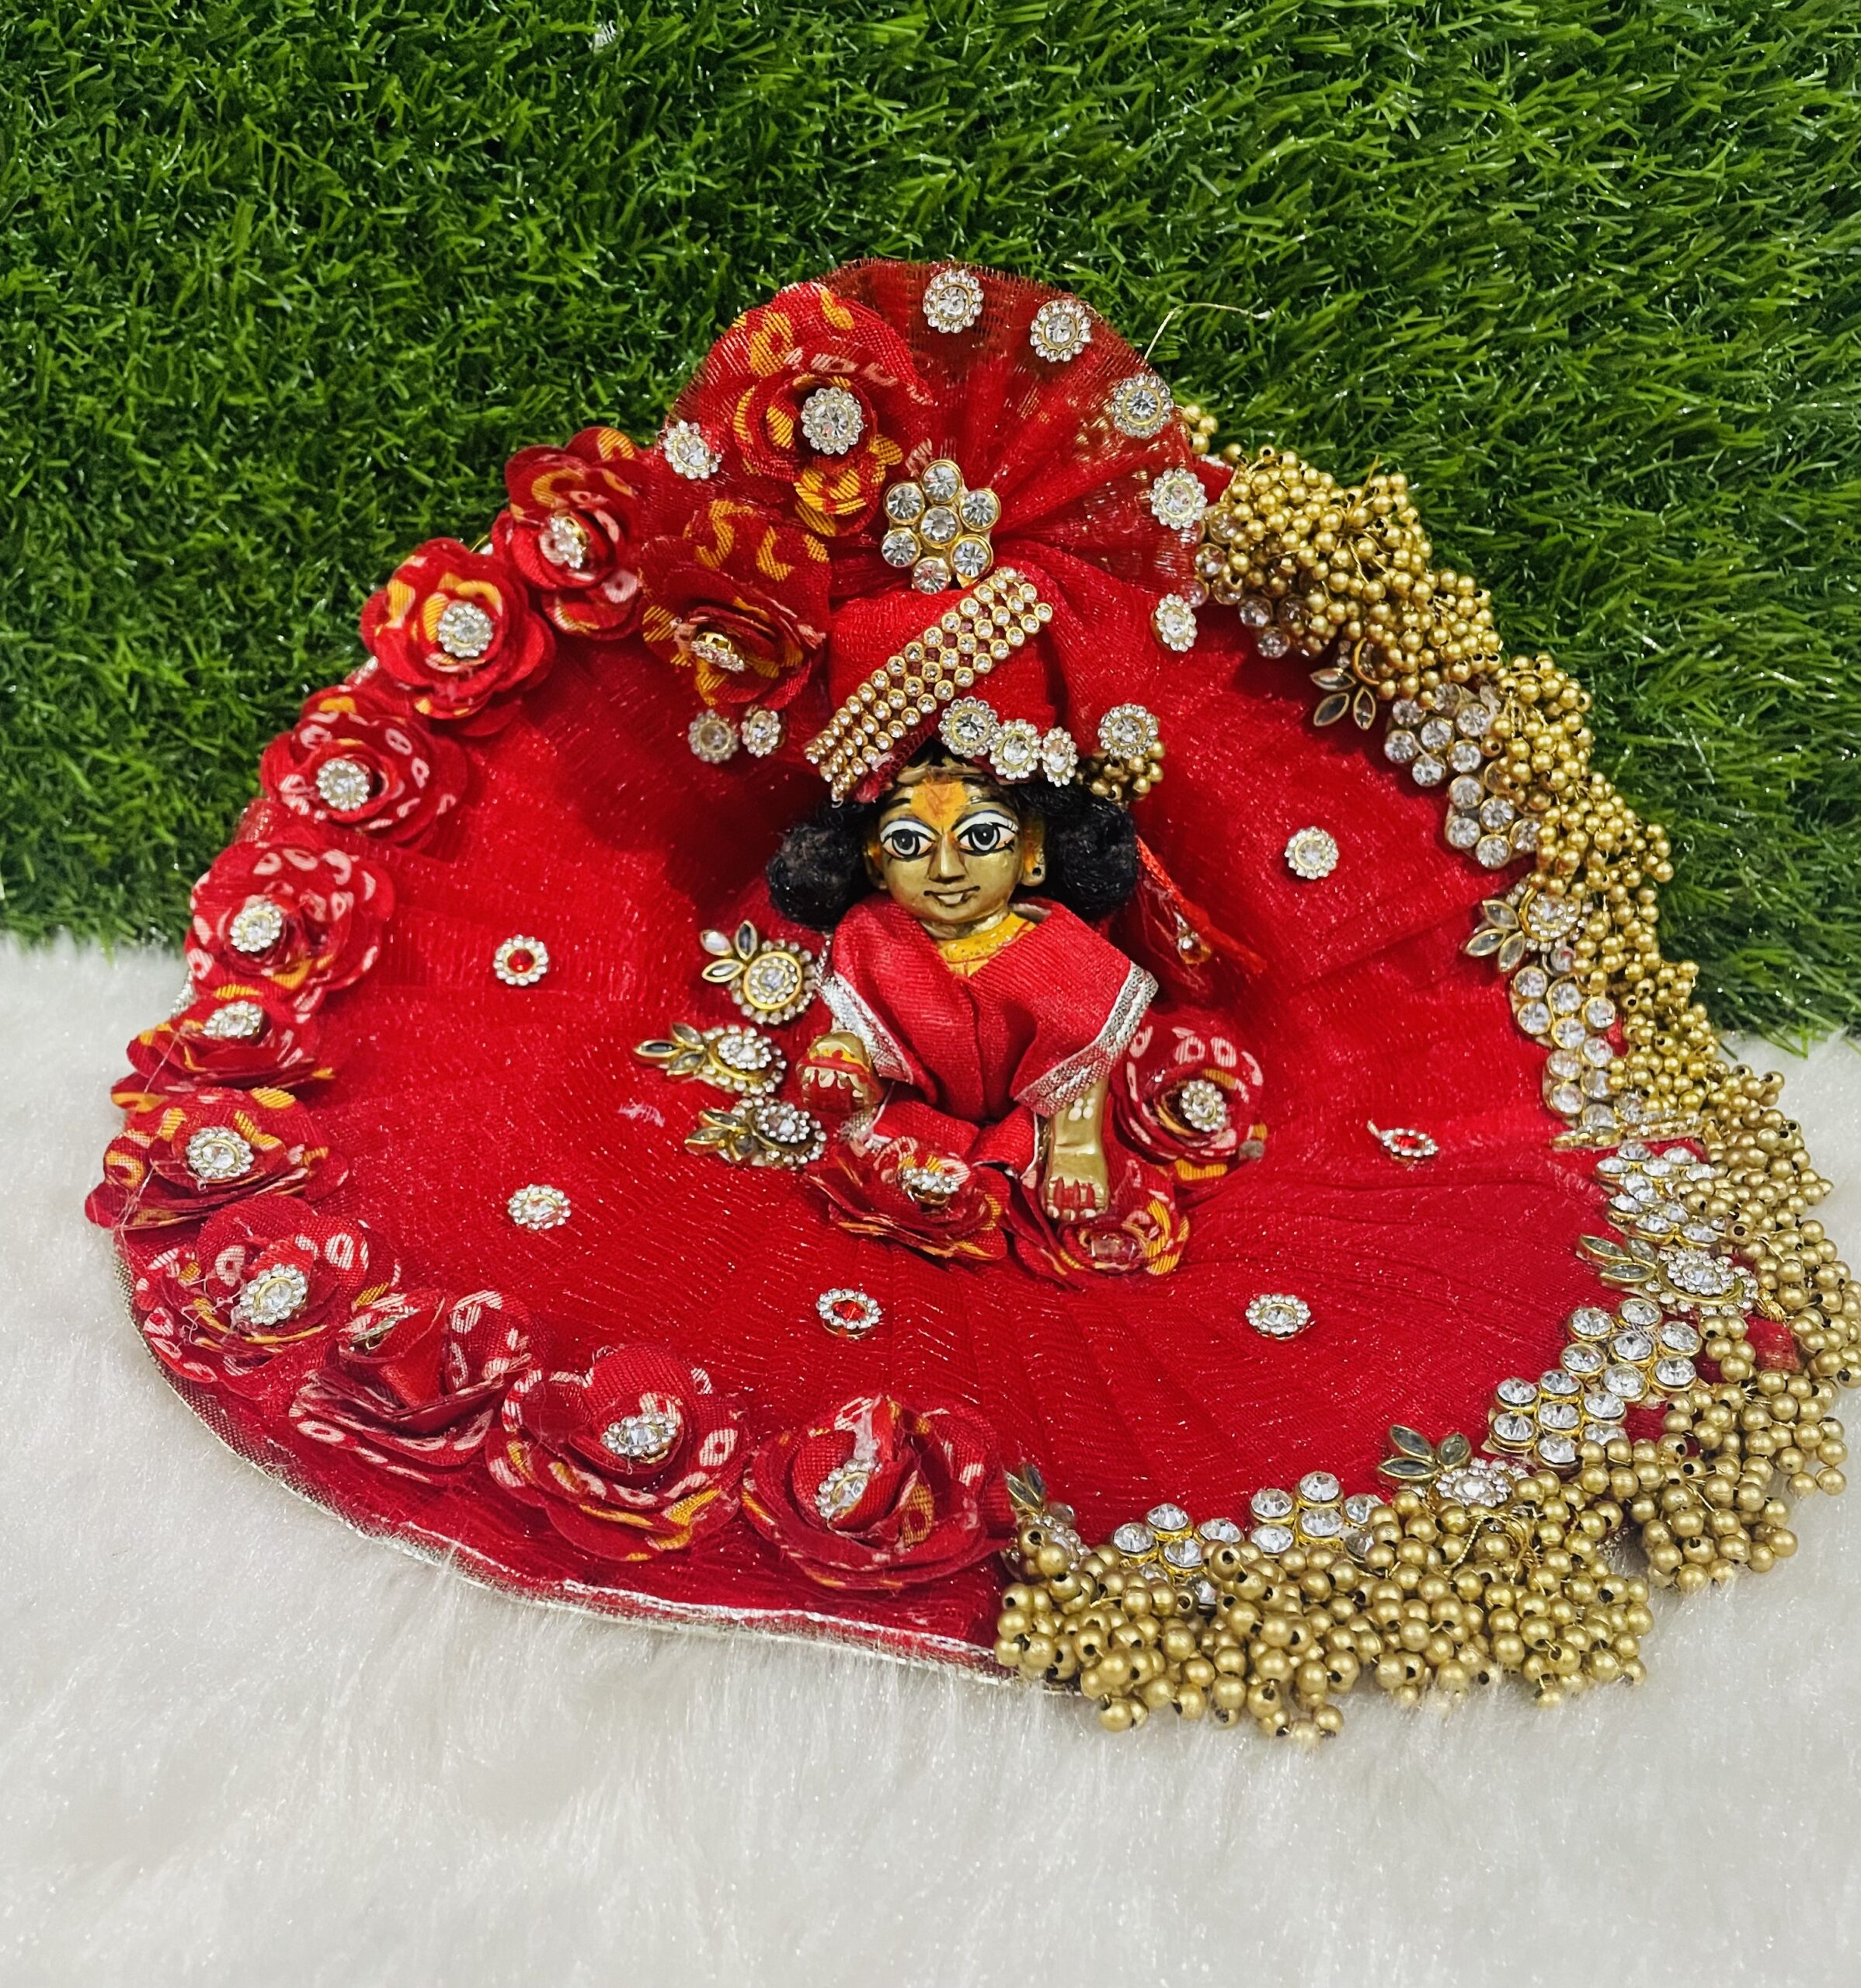 laddu gopal special flower dress – KKGROUPS